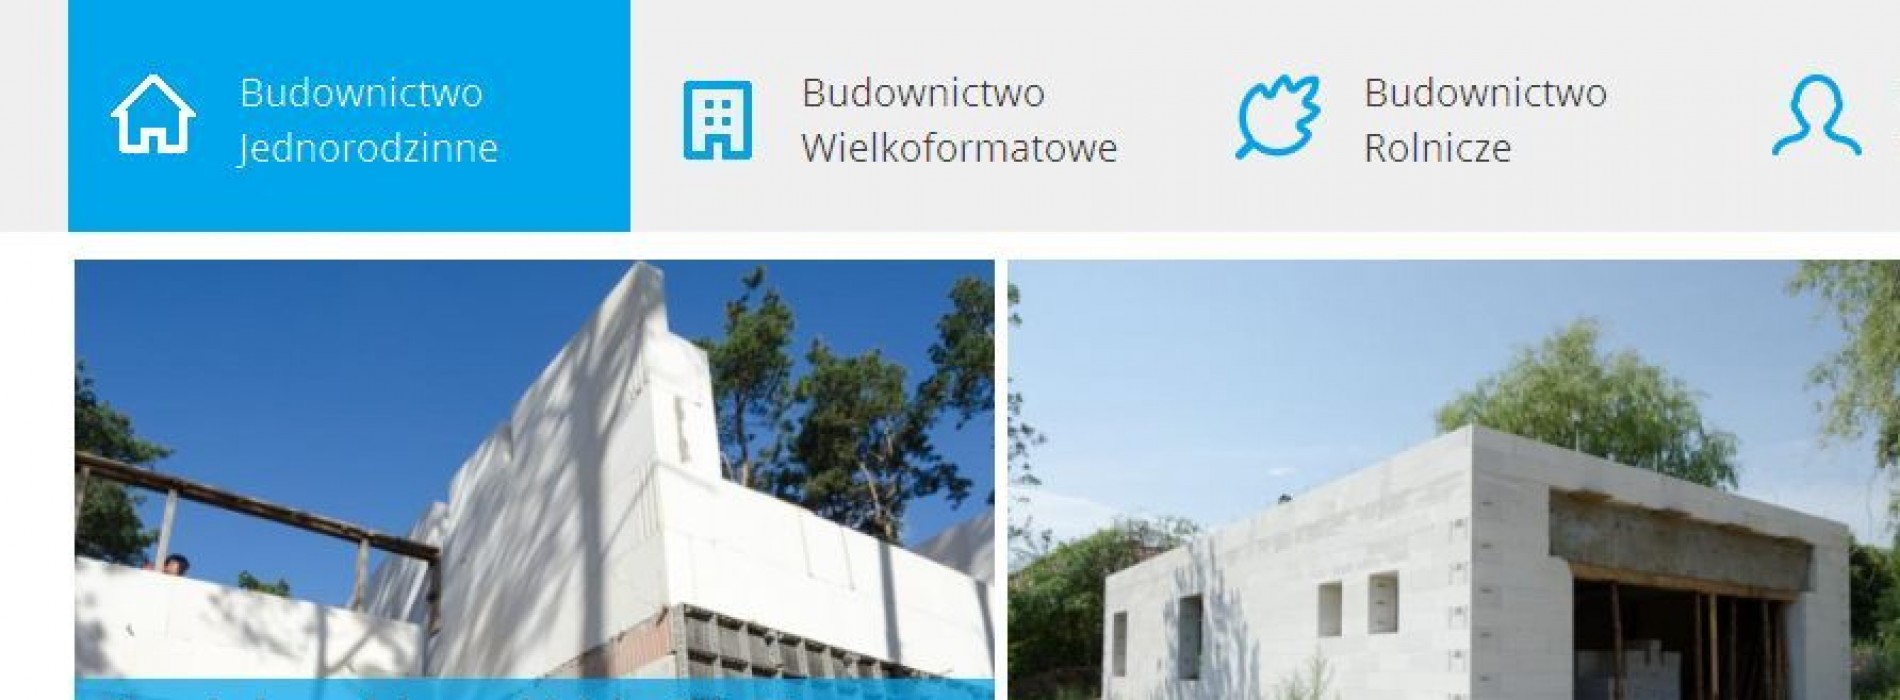 Nowe Budowane.pl w sieci